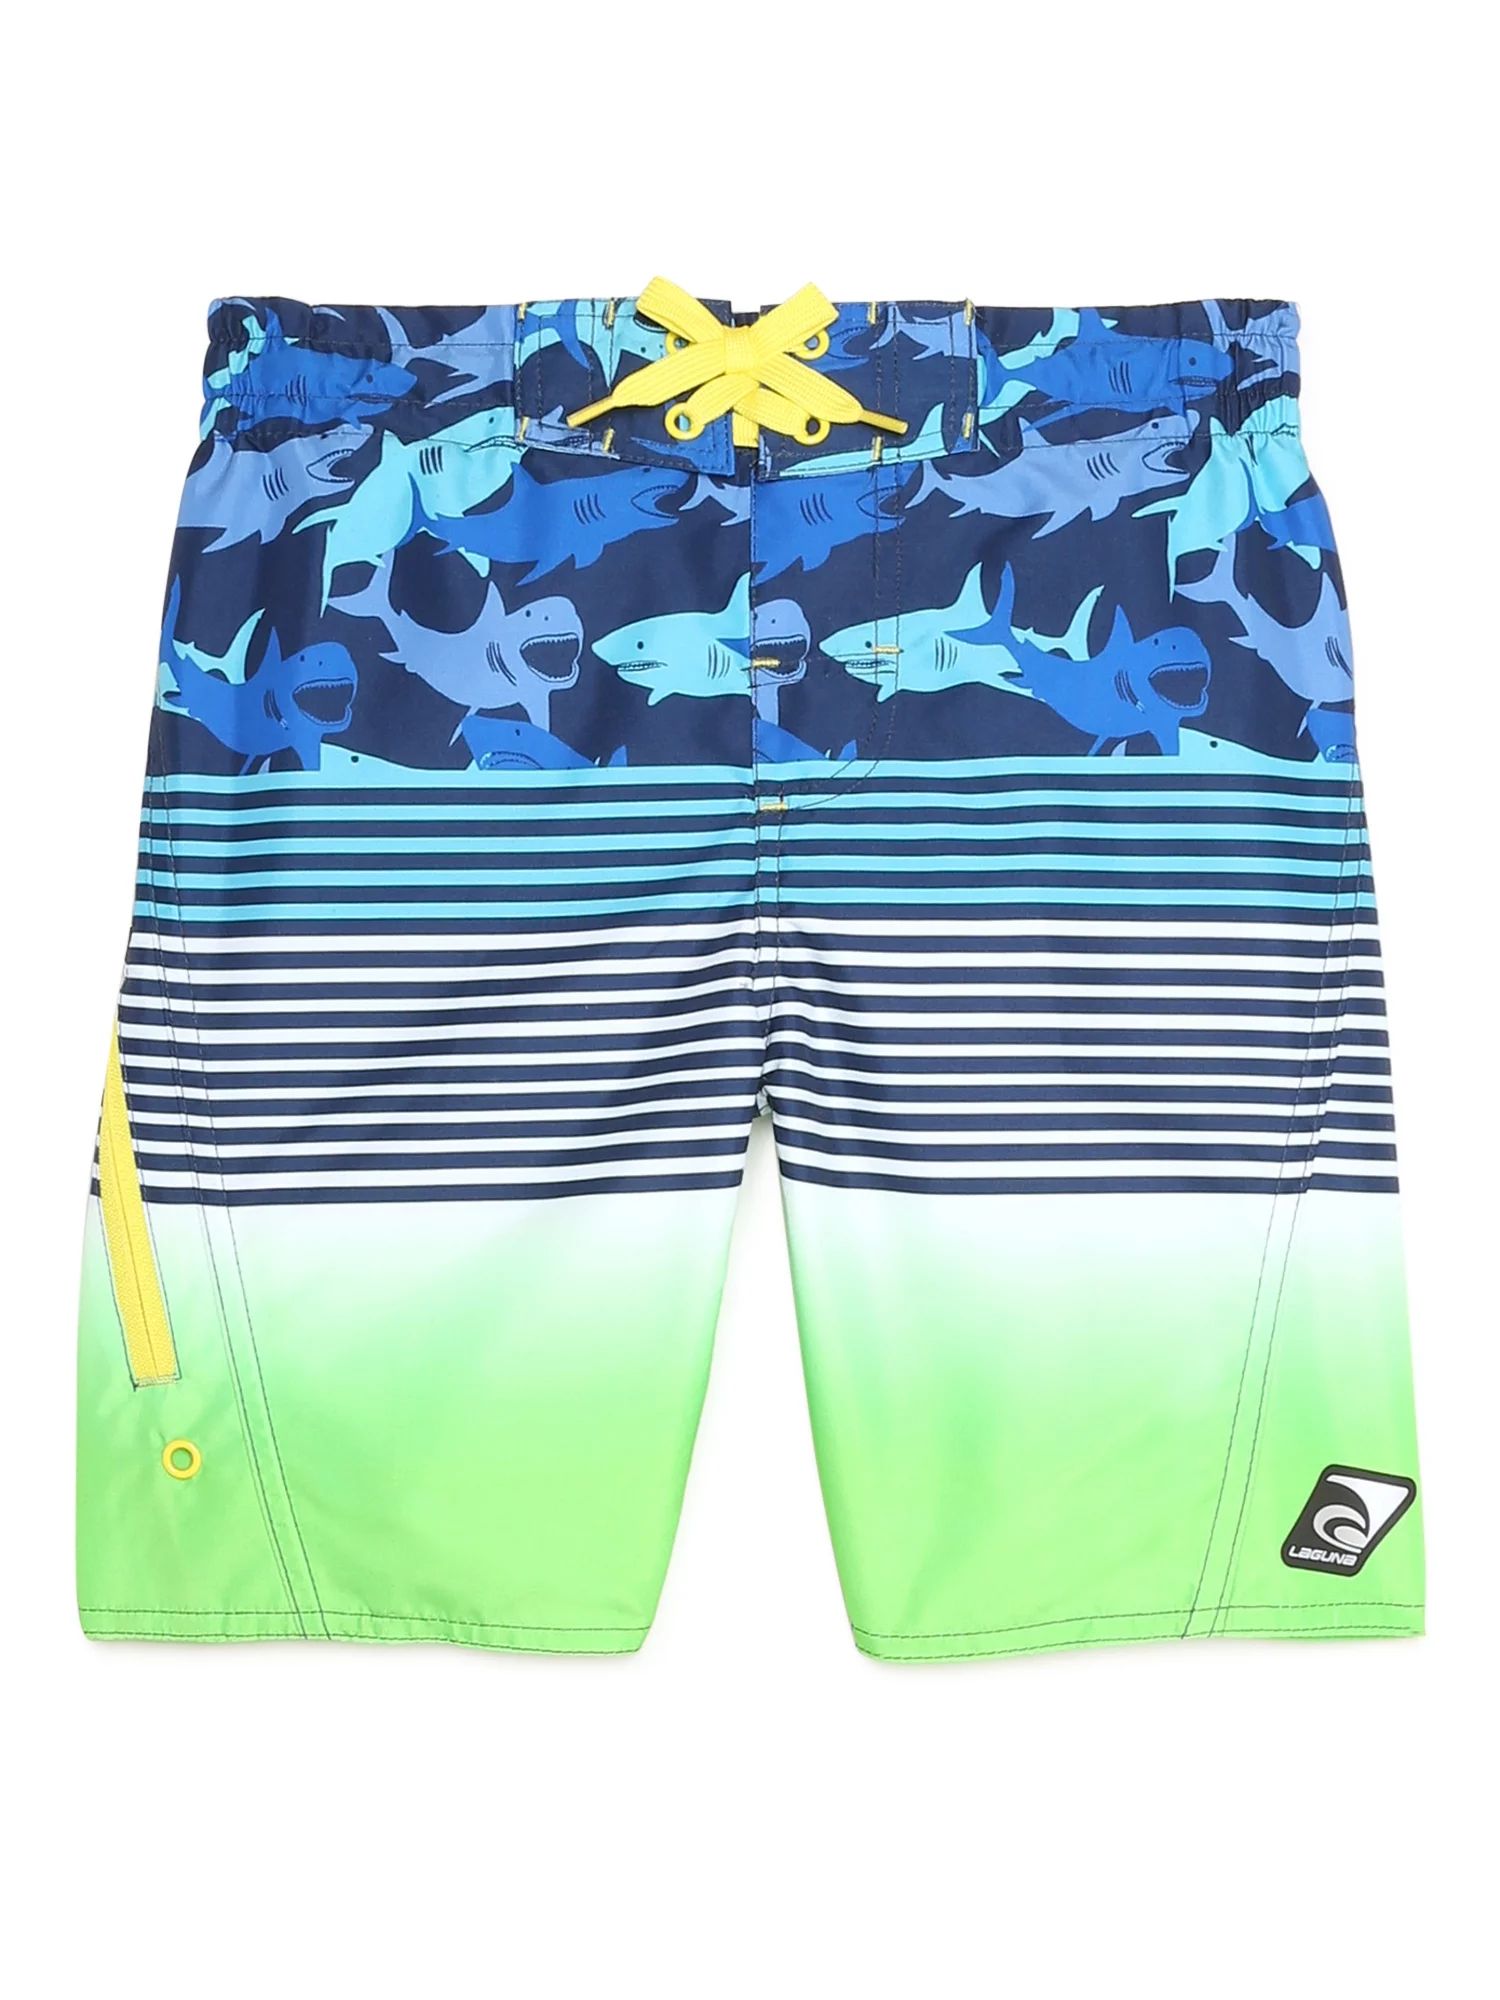 Laguna Boys Swim Trunks, Sizes 8-20 - Walmart.com | Walmart (US)